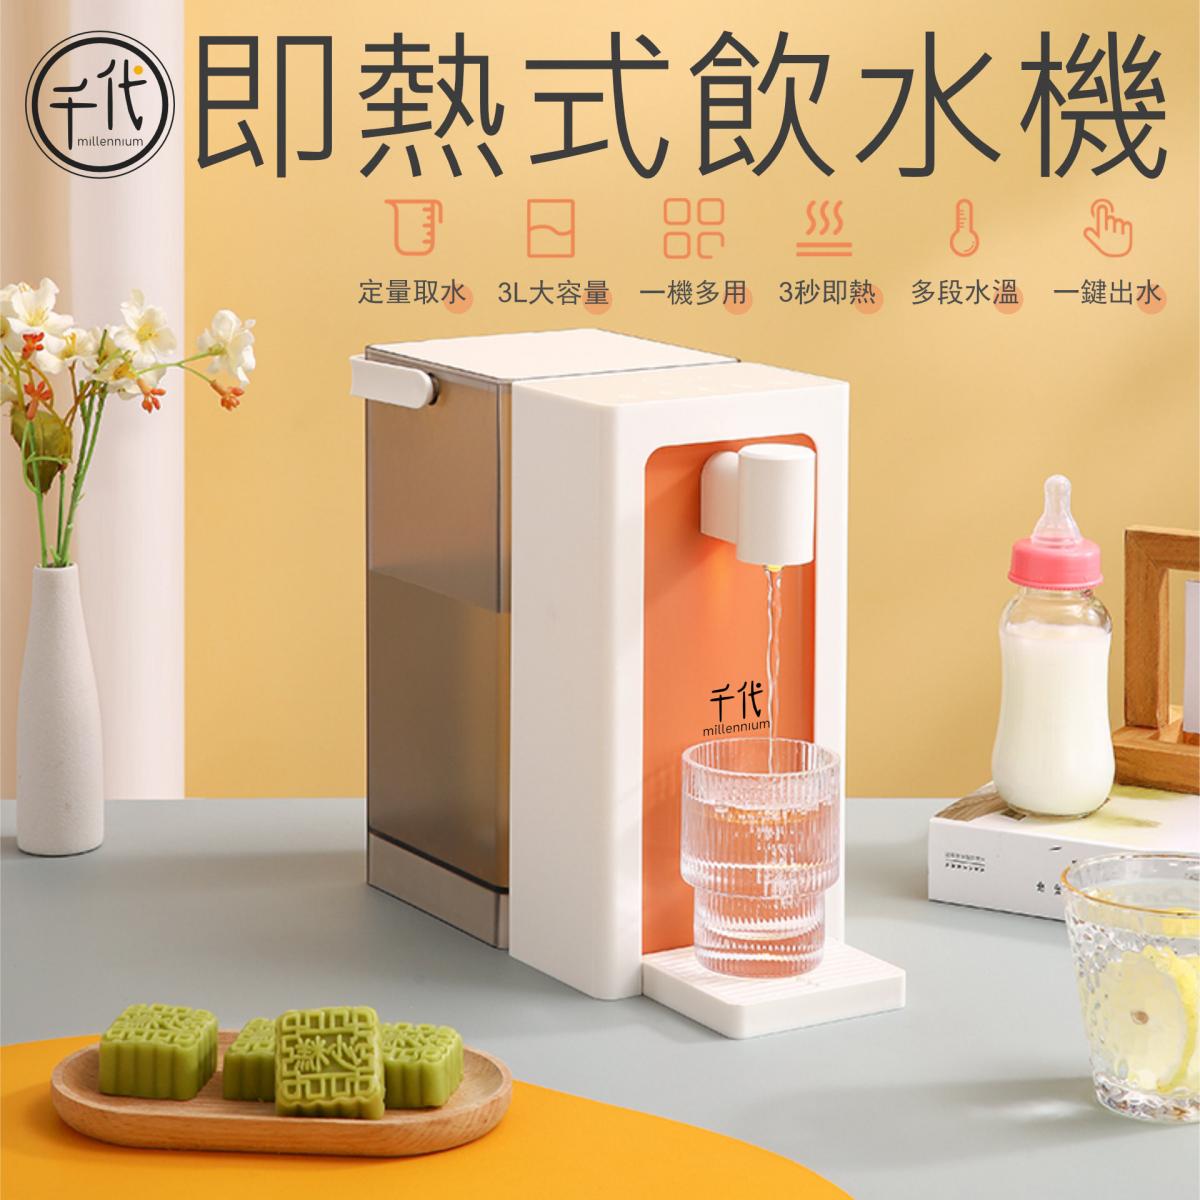 即熱式飲水機3L (英文版)|香港行貨恒溫一鍵出水機 |新鮮即煲咖啡沖奶機 |抗菌水箱 |自定熱水溫度